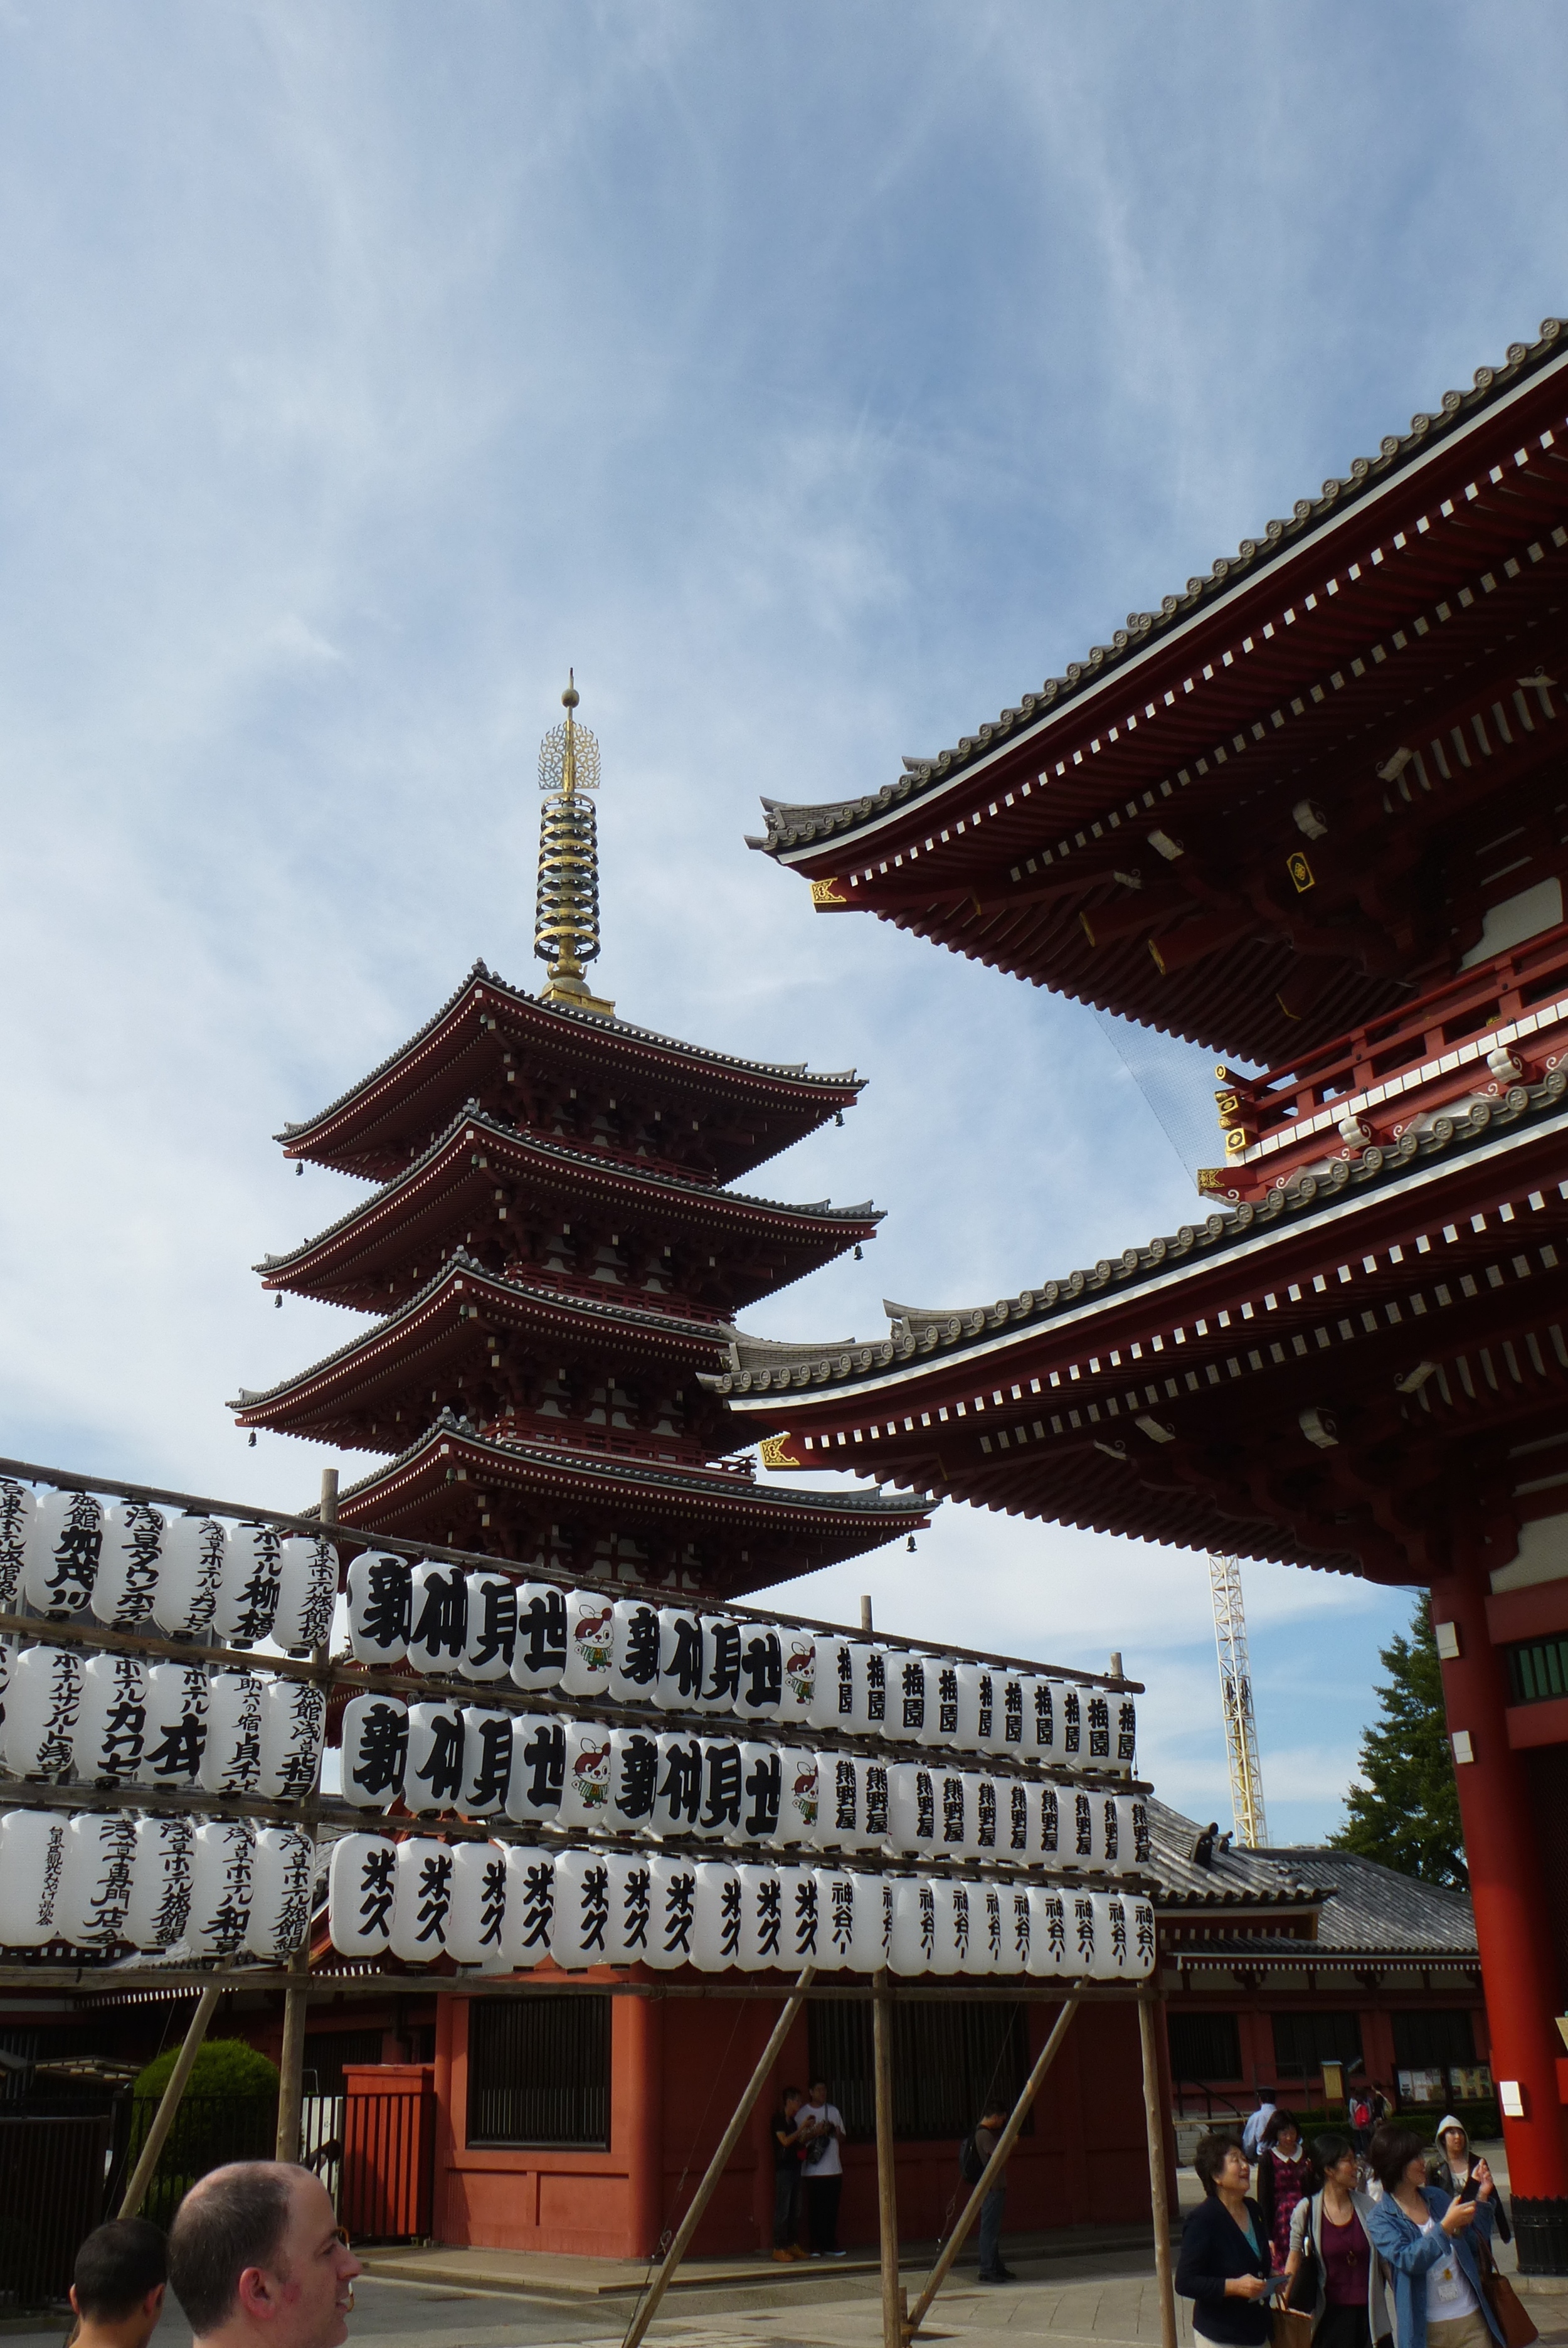 The pagoda at Asakusa